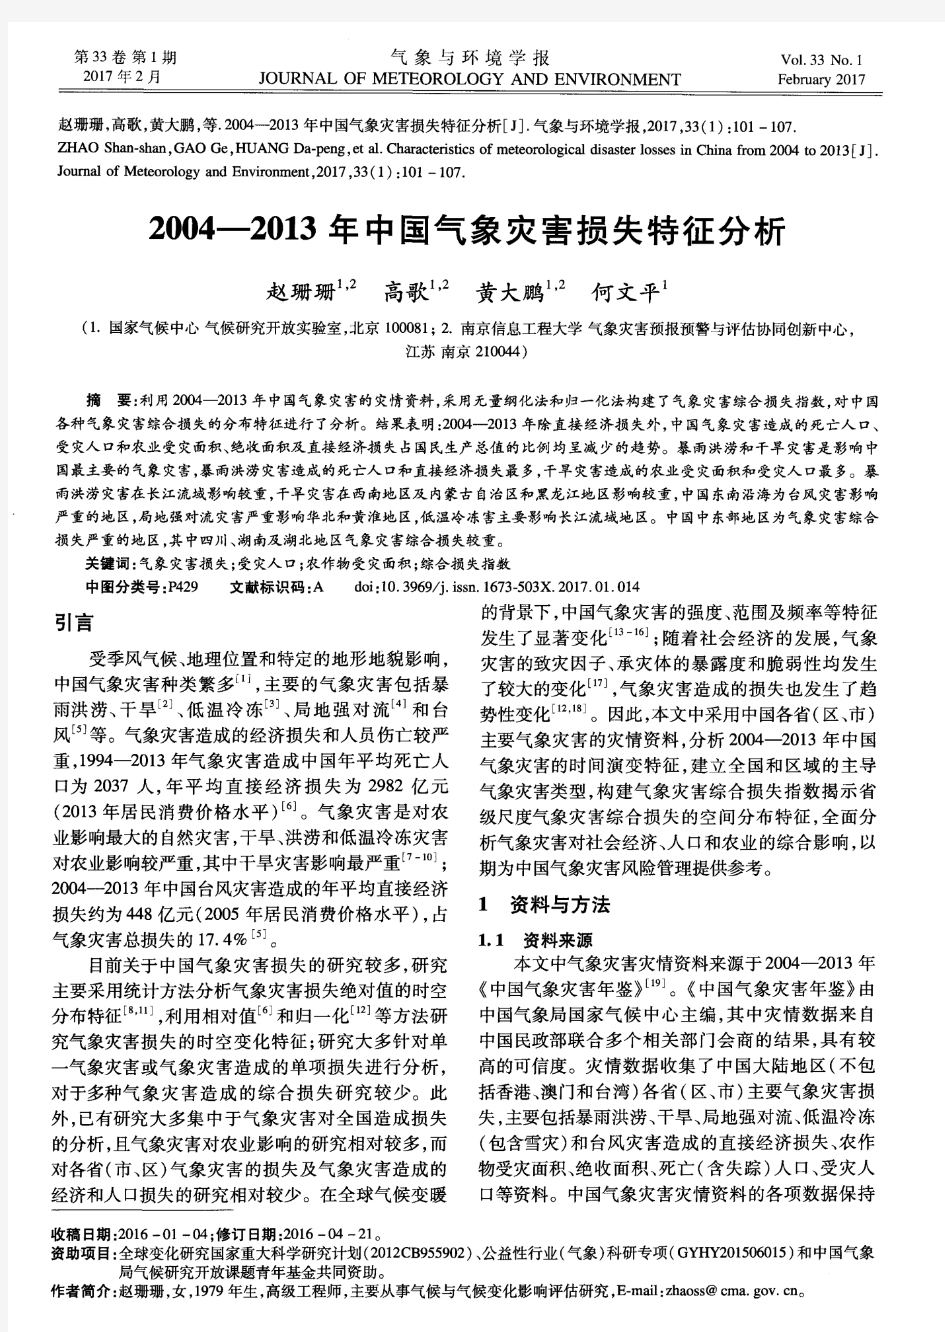 2004—2013年中国气象灾害损失特征分析